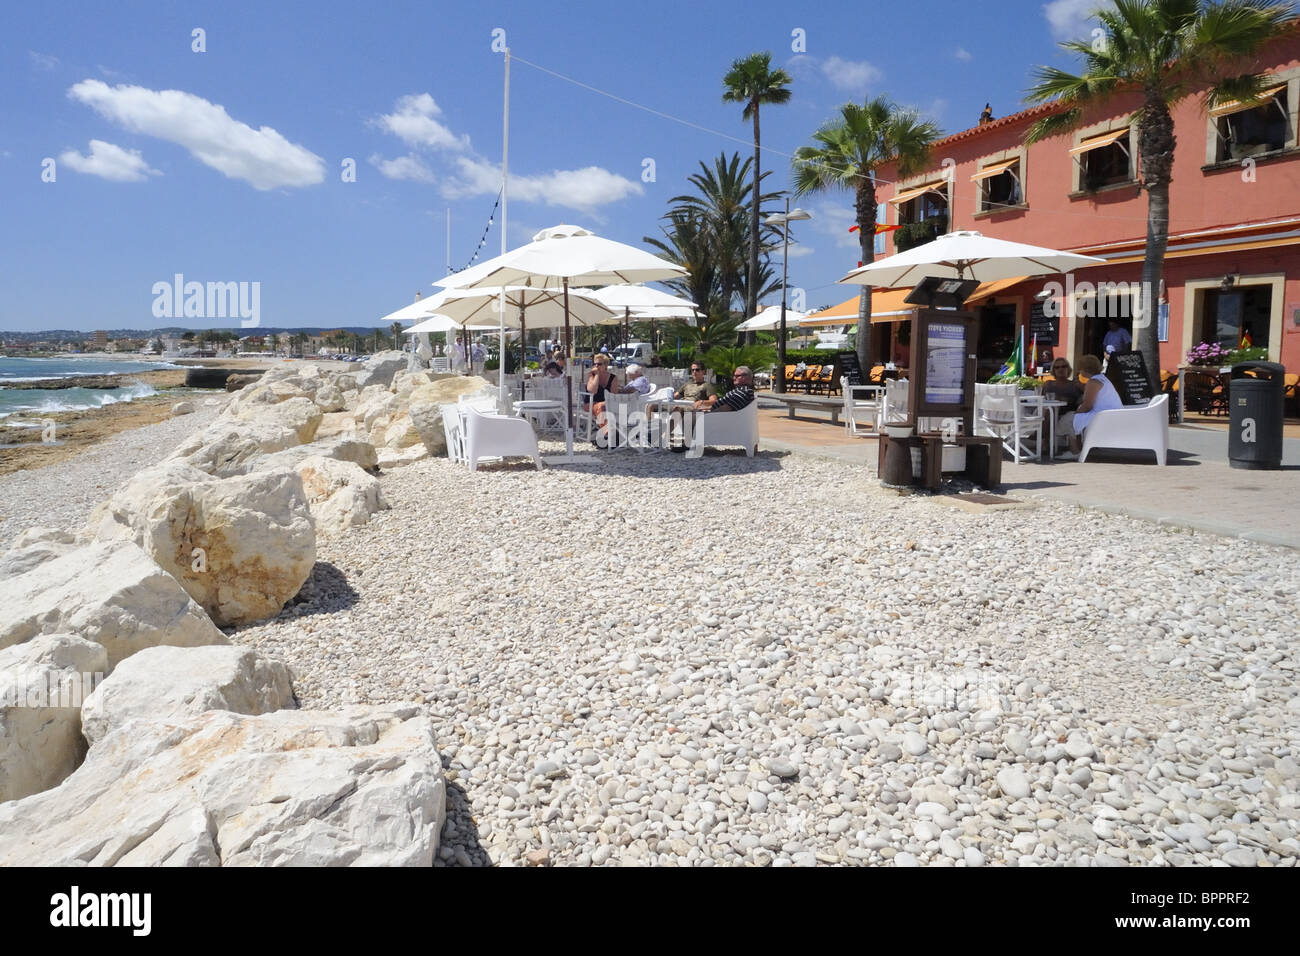 La Esquina Cafe on Marina Espanola, The Port, Javea, Spain Stock Photo